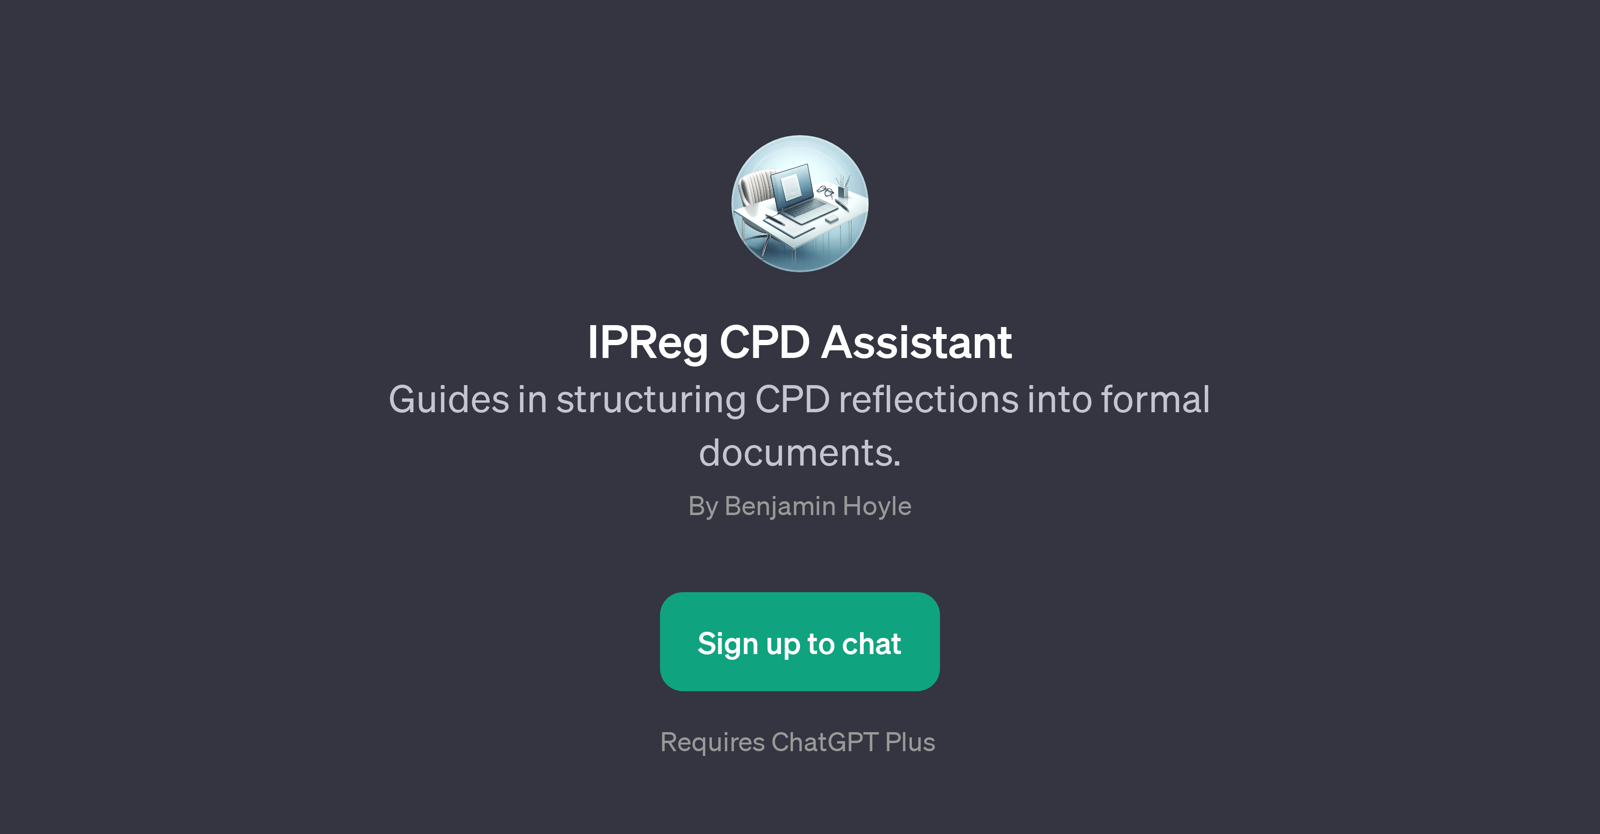 IPReg CPD Assistant website